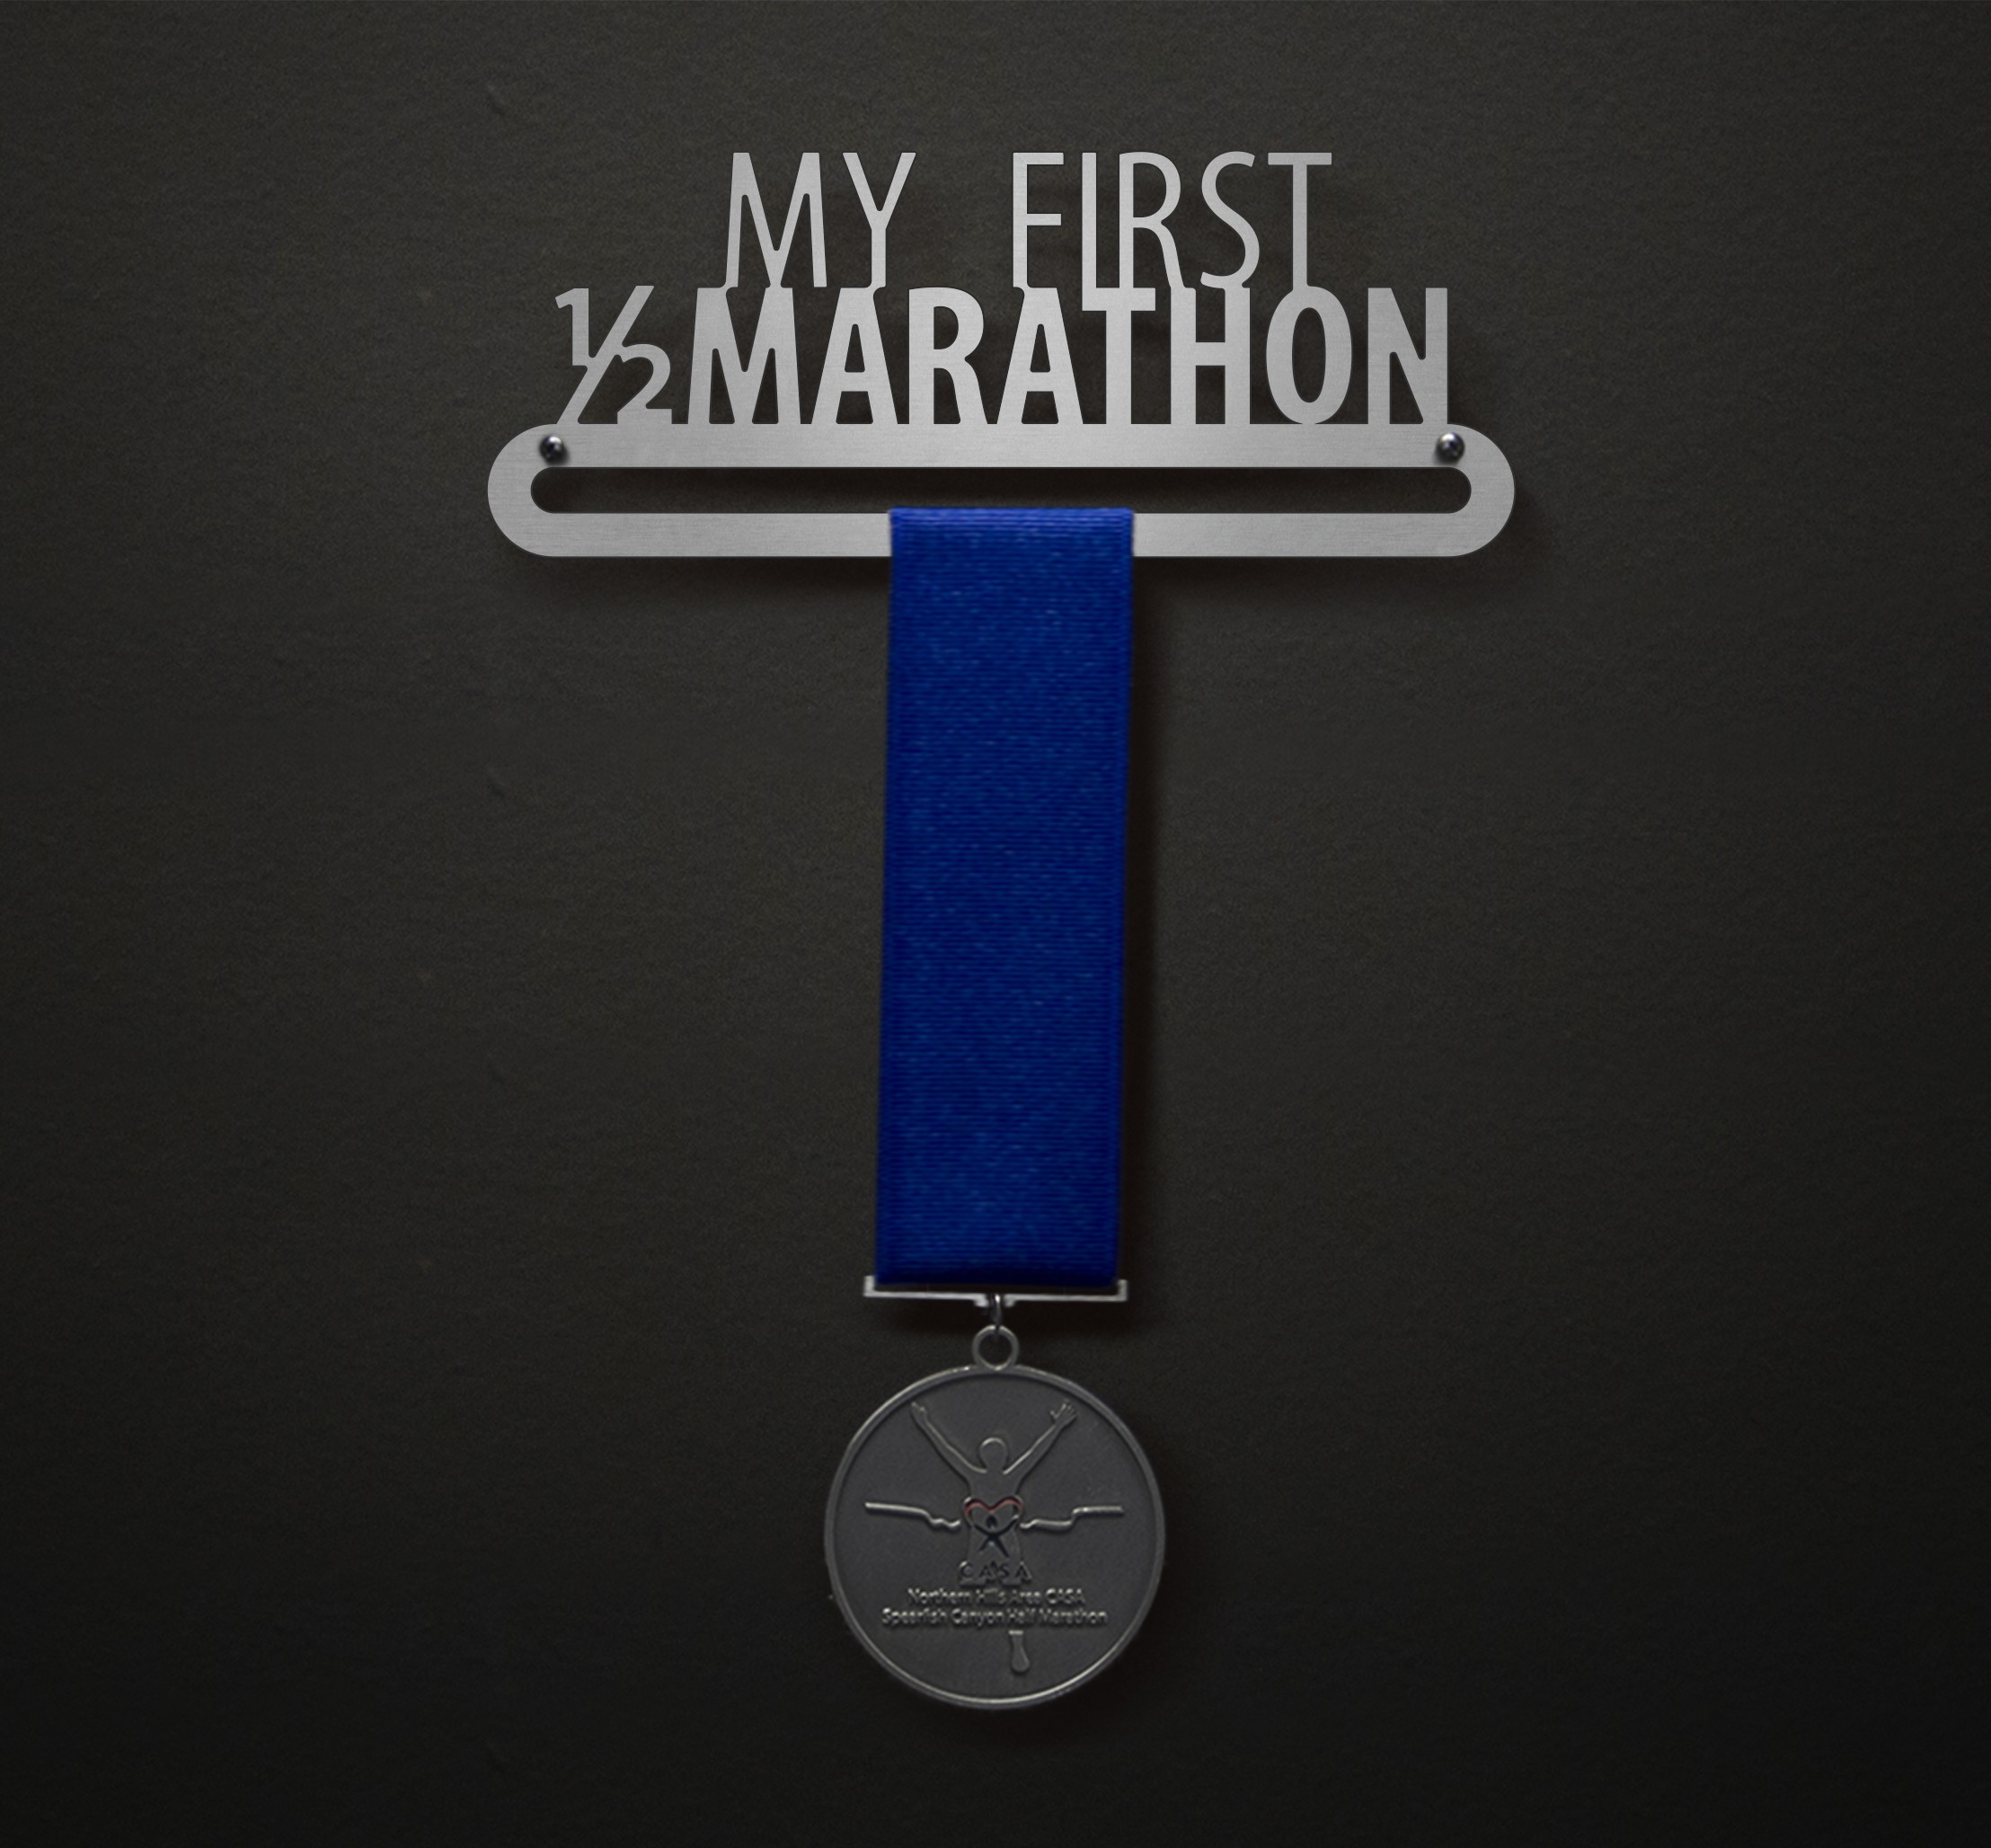 My First 1/2 Marathon - Myriad over Myriad Bold